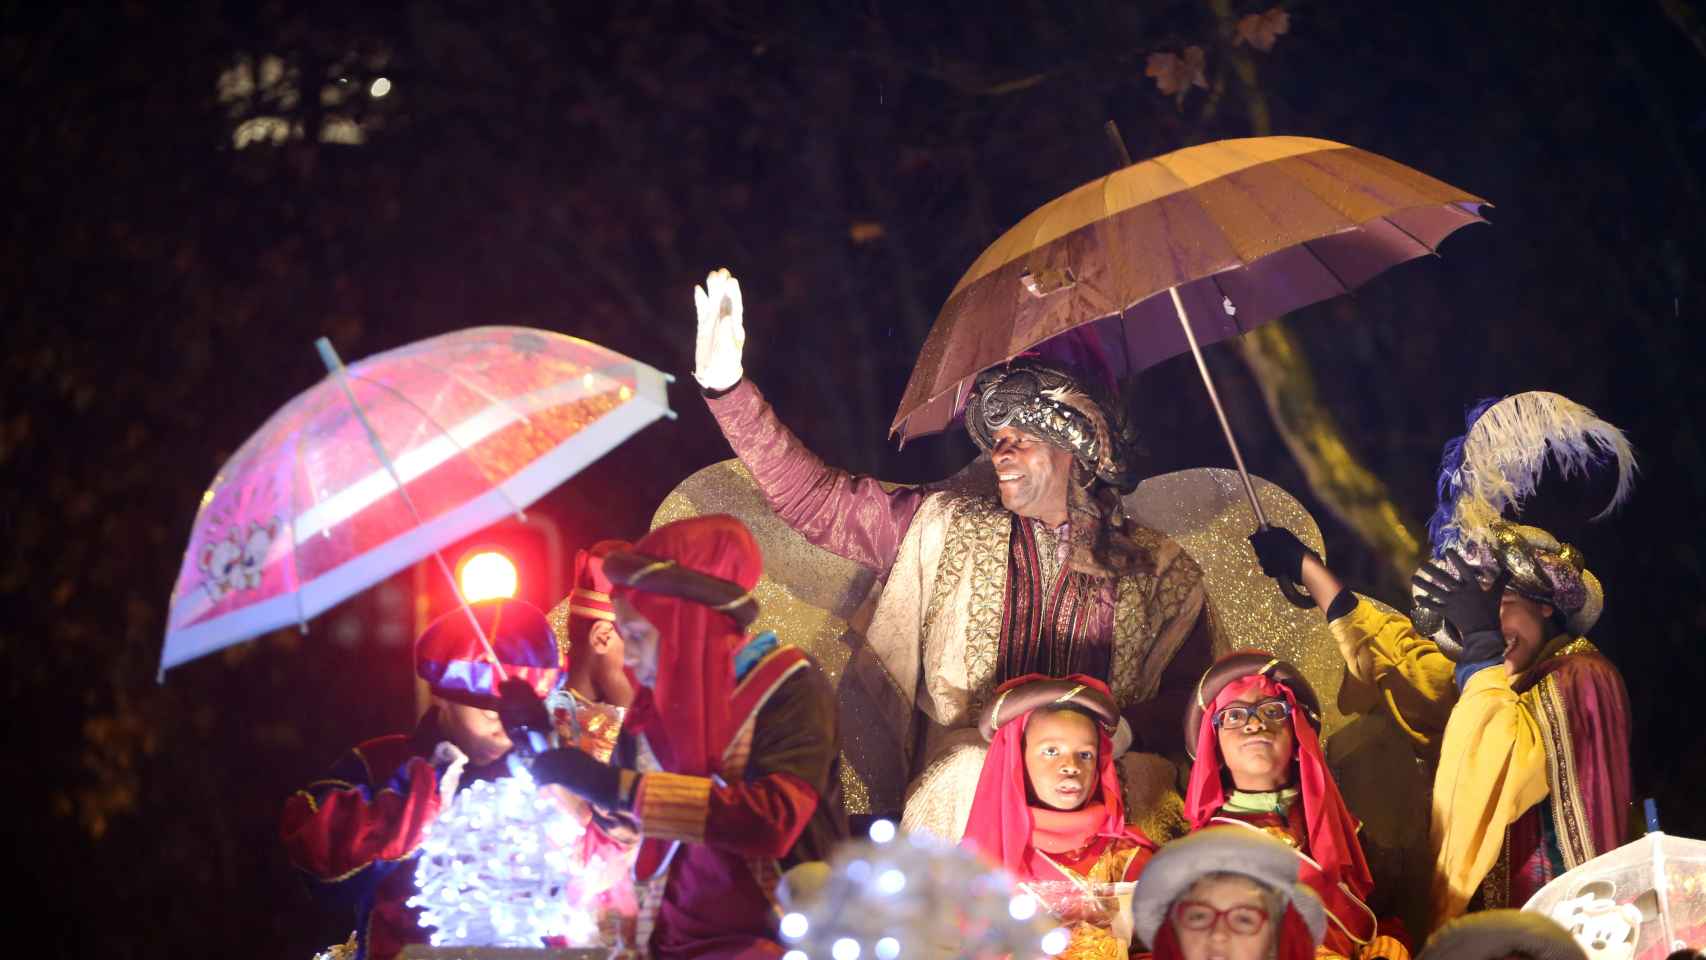 Foto: Archivo. Rubén Cacho / ICAL . El Rey Baltasar saluda a los niños durante la Cabalgata de los Reyes Magos en Valladolid